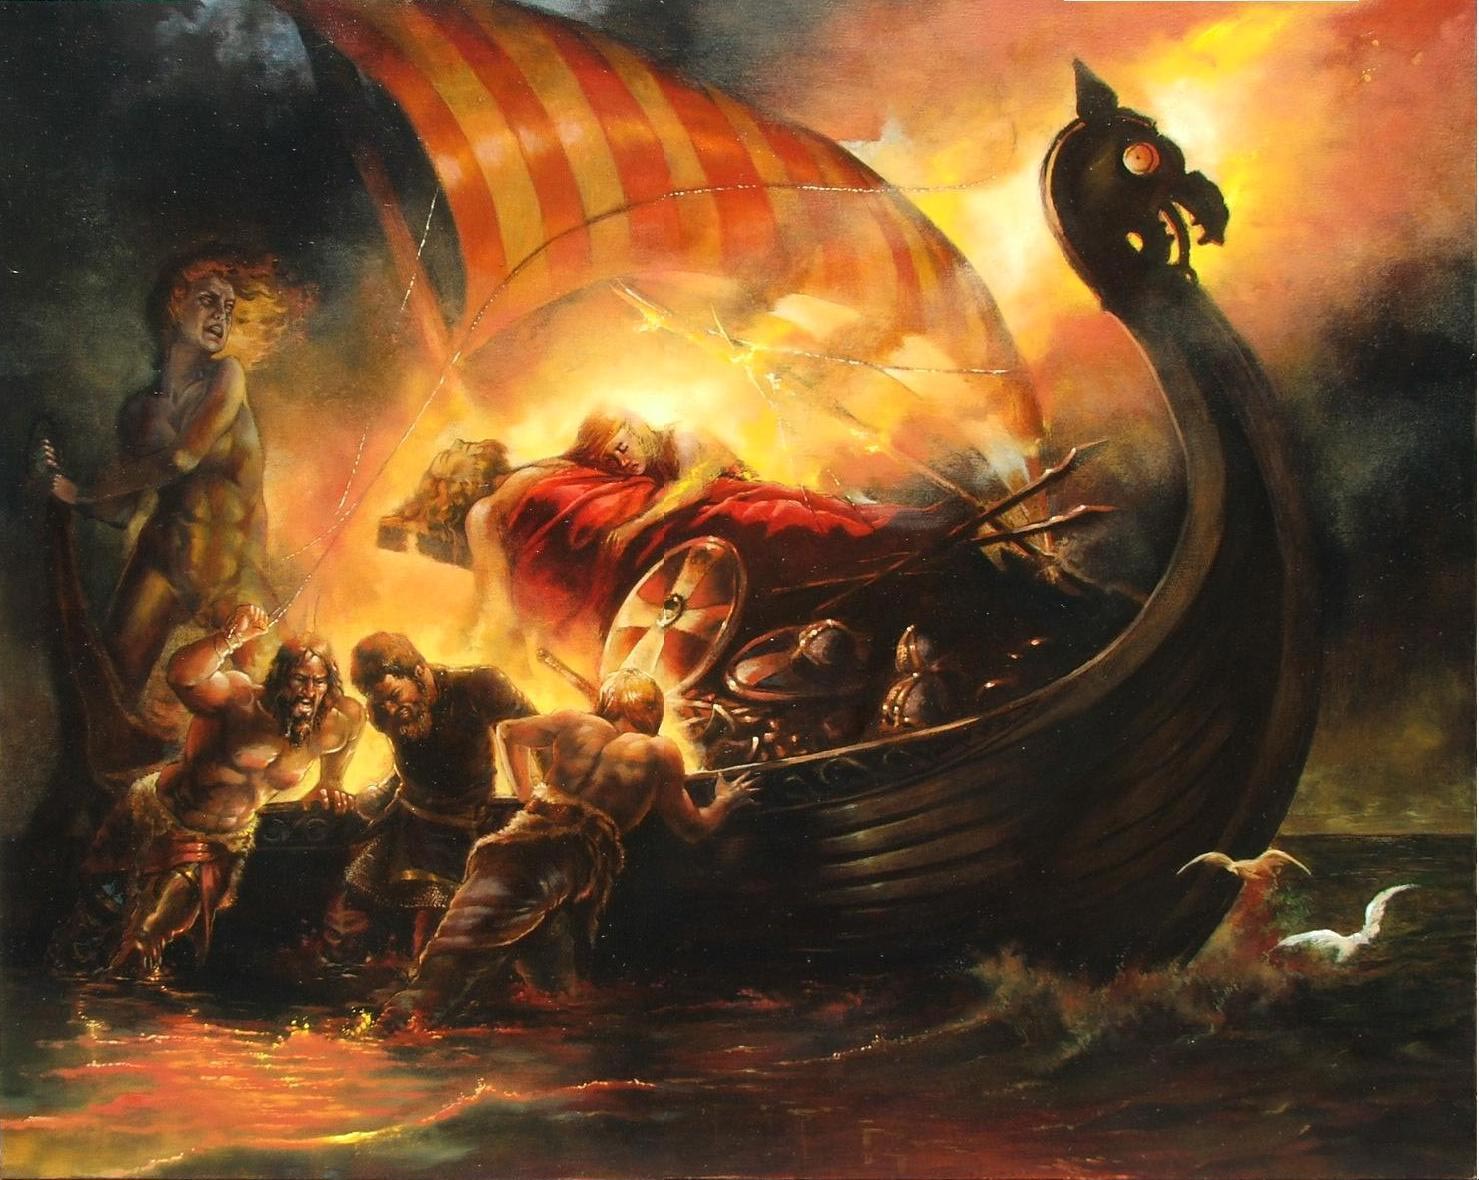 nordijska mitologija Baldrova smrt